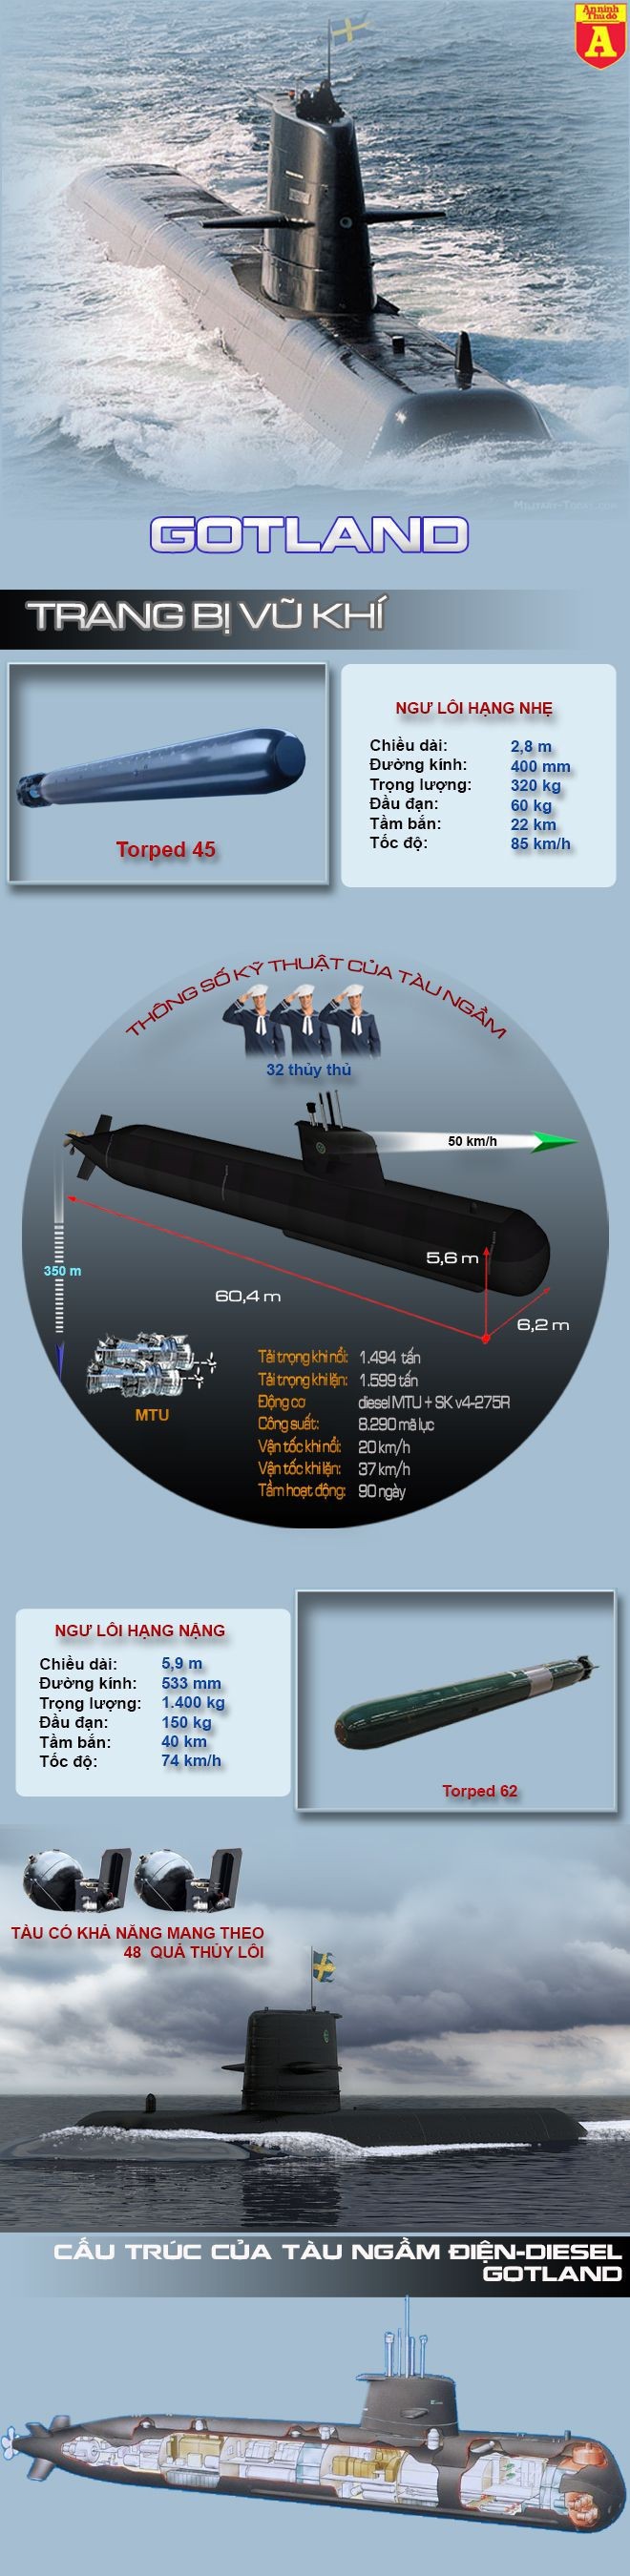 [Infographic] Gotland - "Sát thủ đại dương" khiến tàu ngầm nguyên tử nể phục ảnh 2